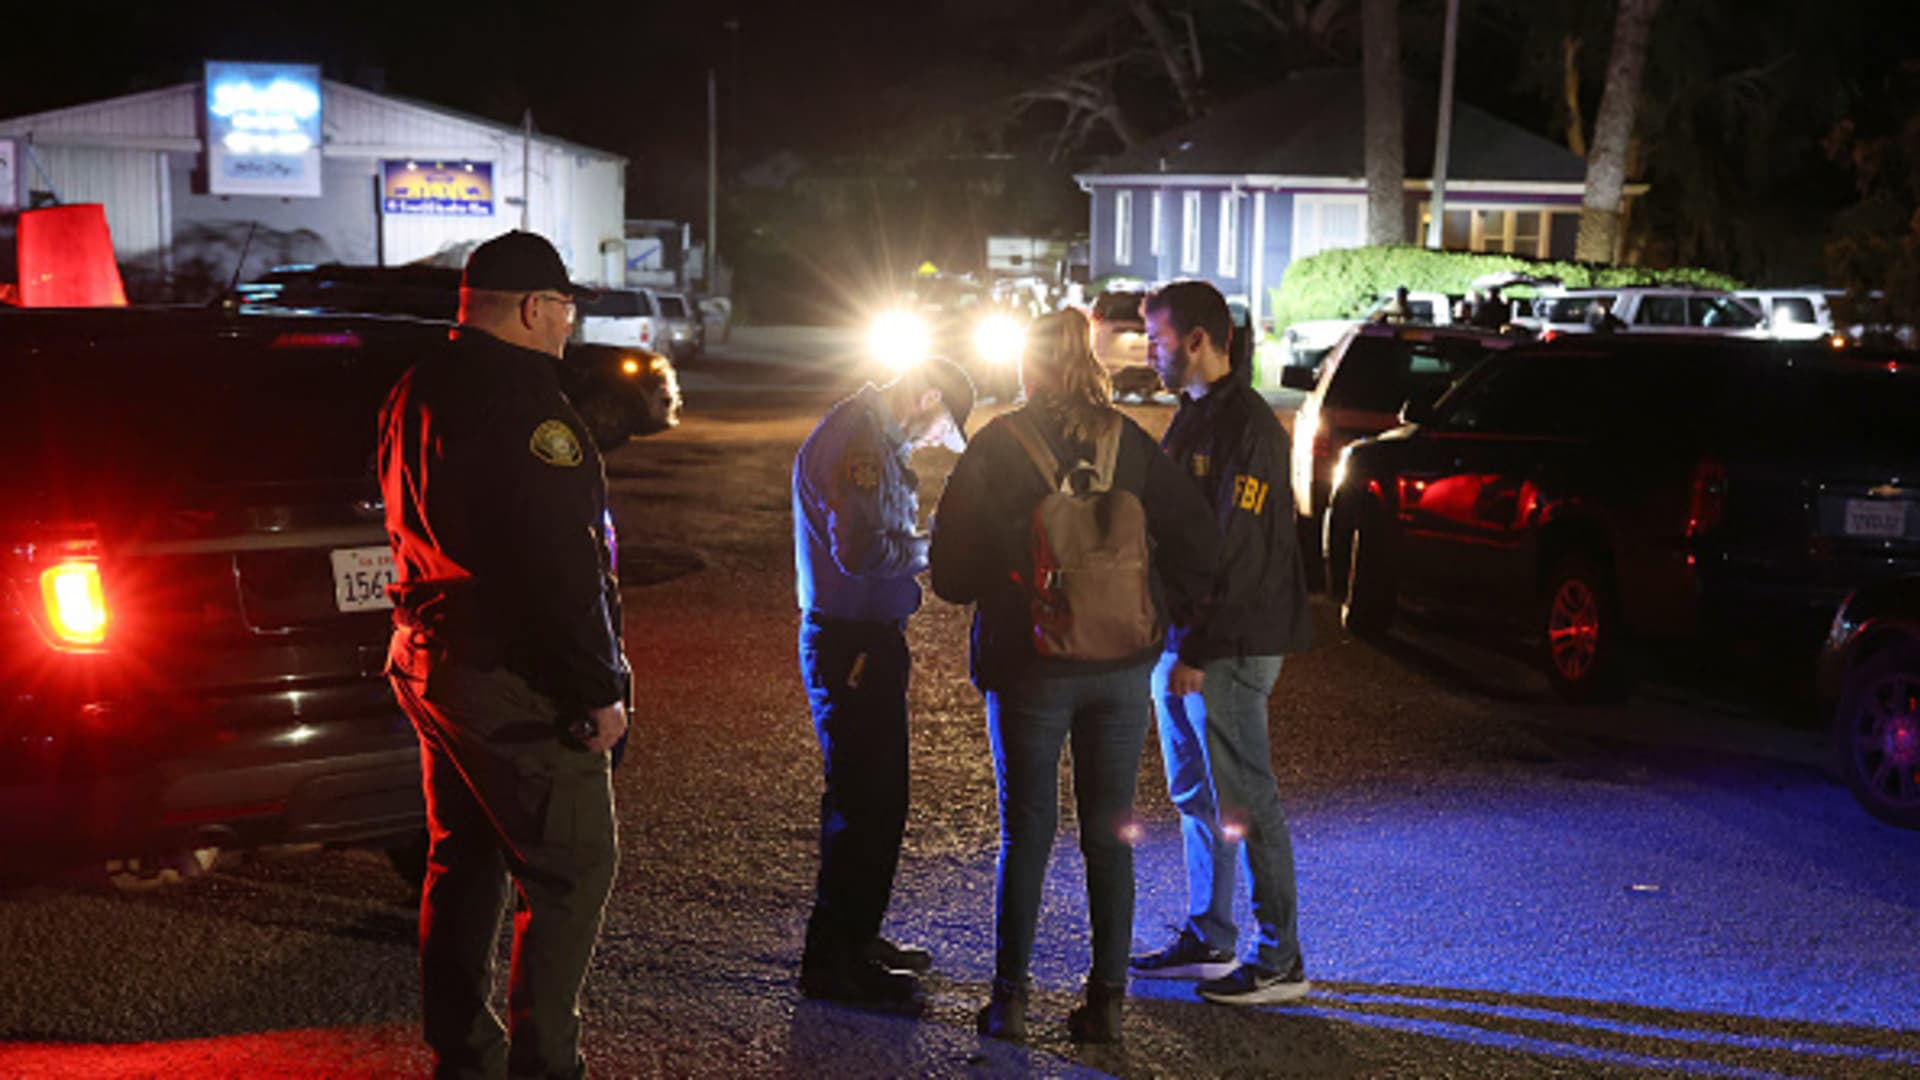 7 dead, 1 injured in Half Moon Bay shootings; suspect in custody